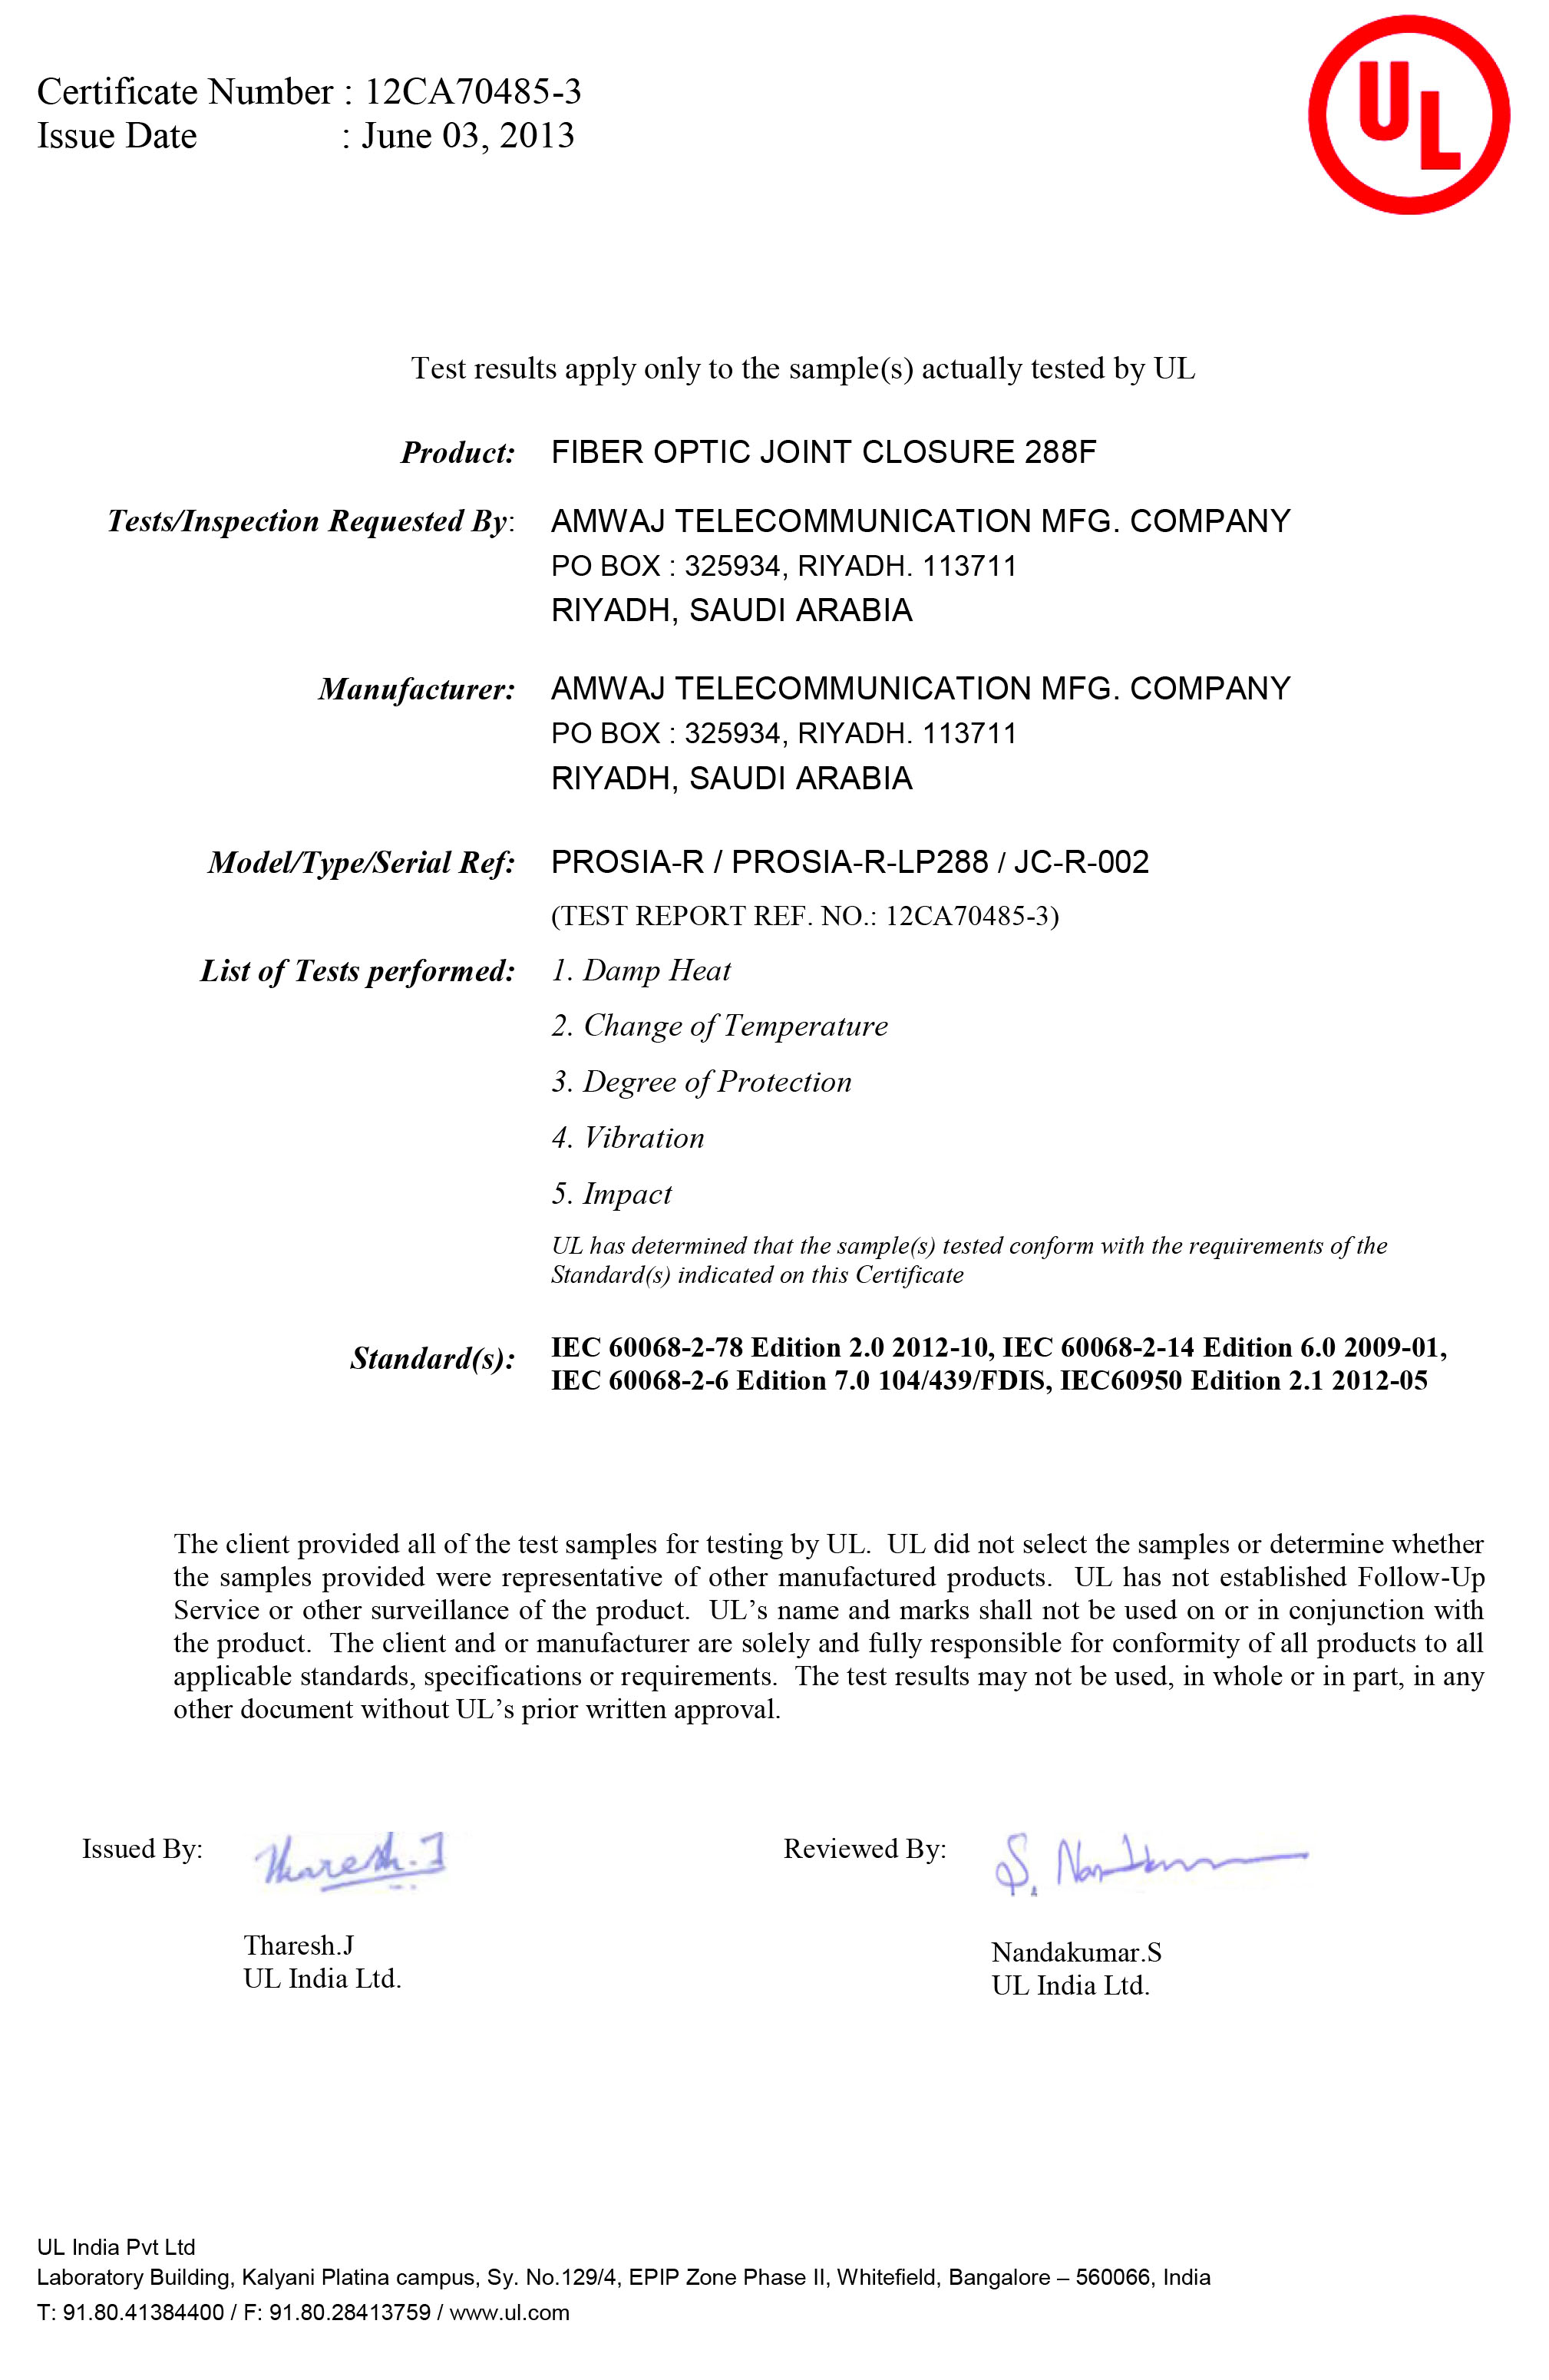 UL Certificate for FOJC 288F